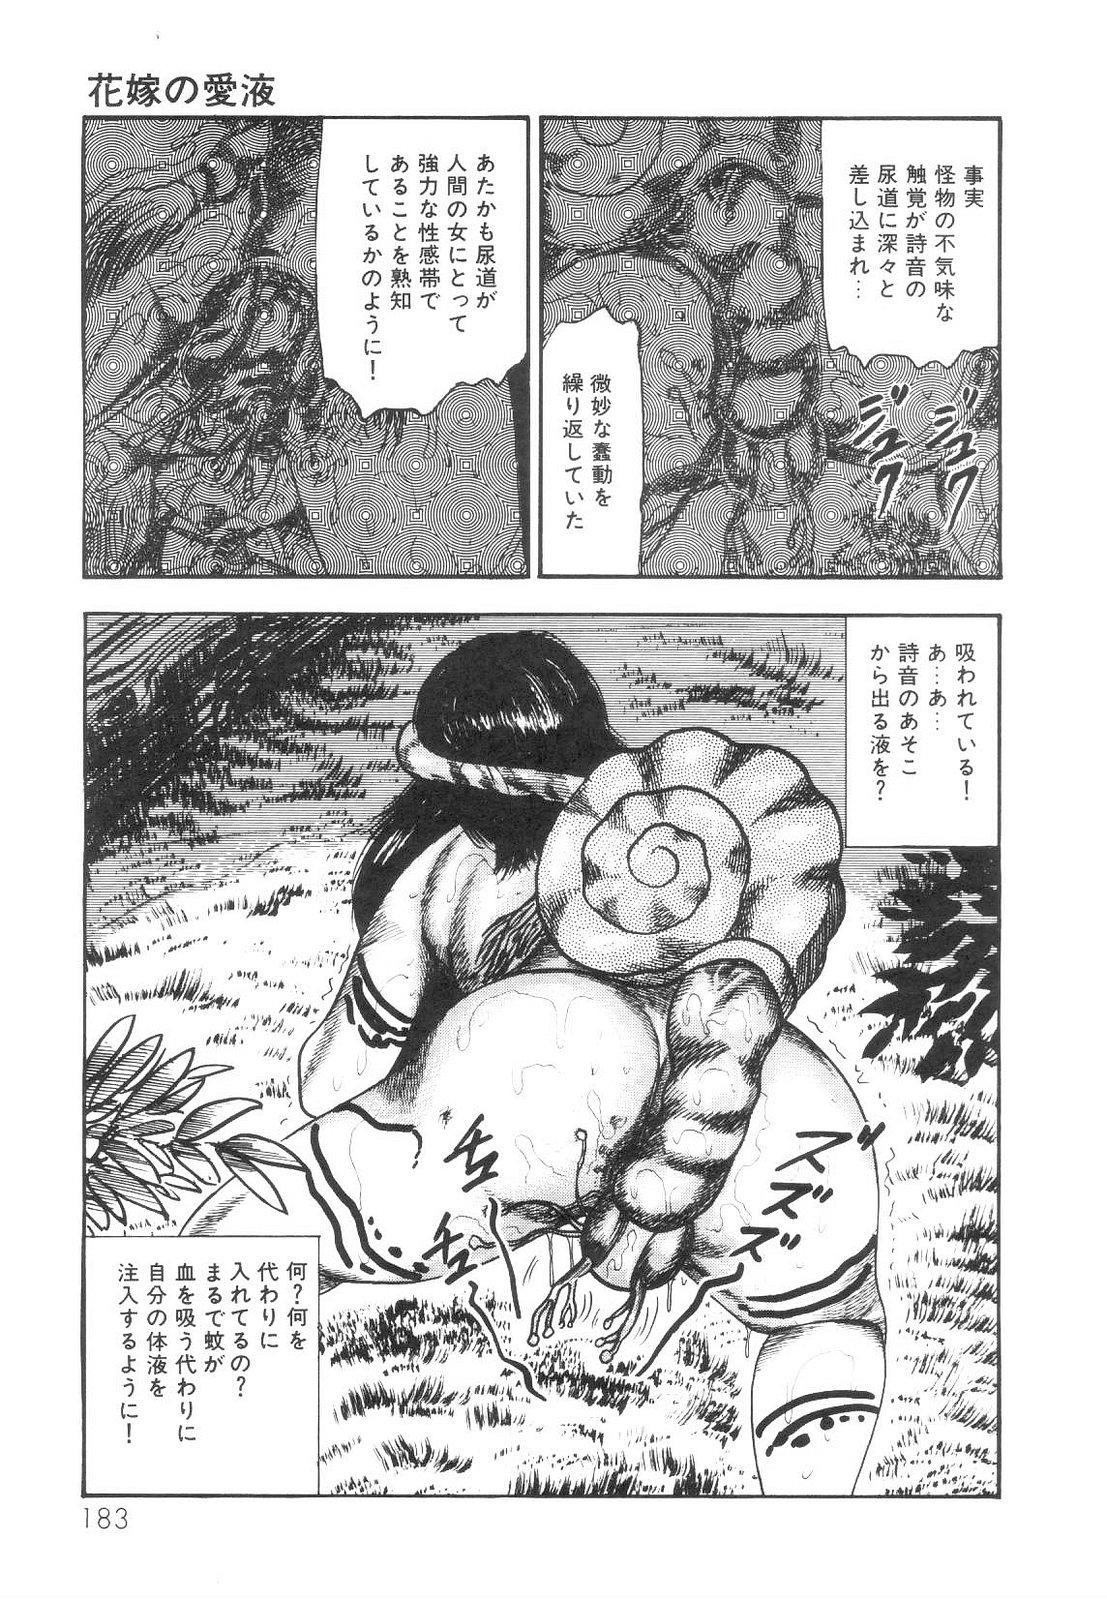 Shiro no Mokushiroku Vol. 1 - Sei Shojo Shion no Shou 183